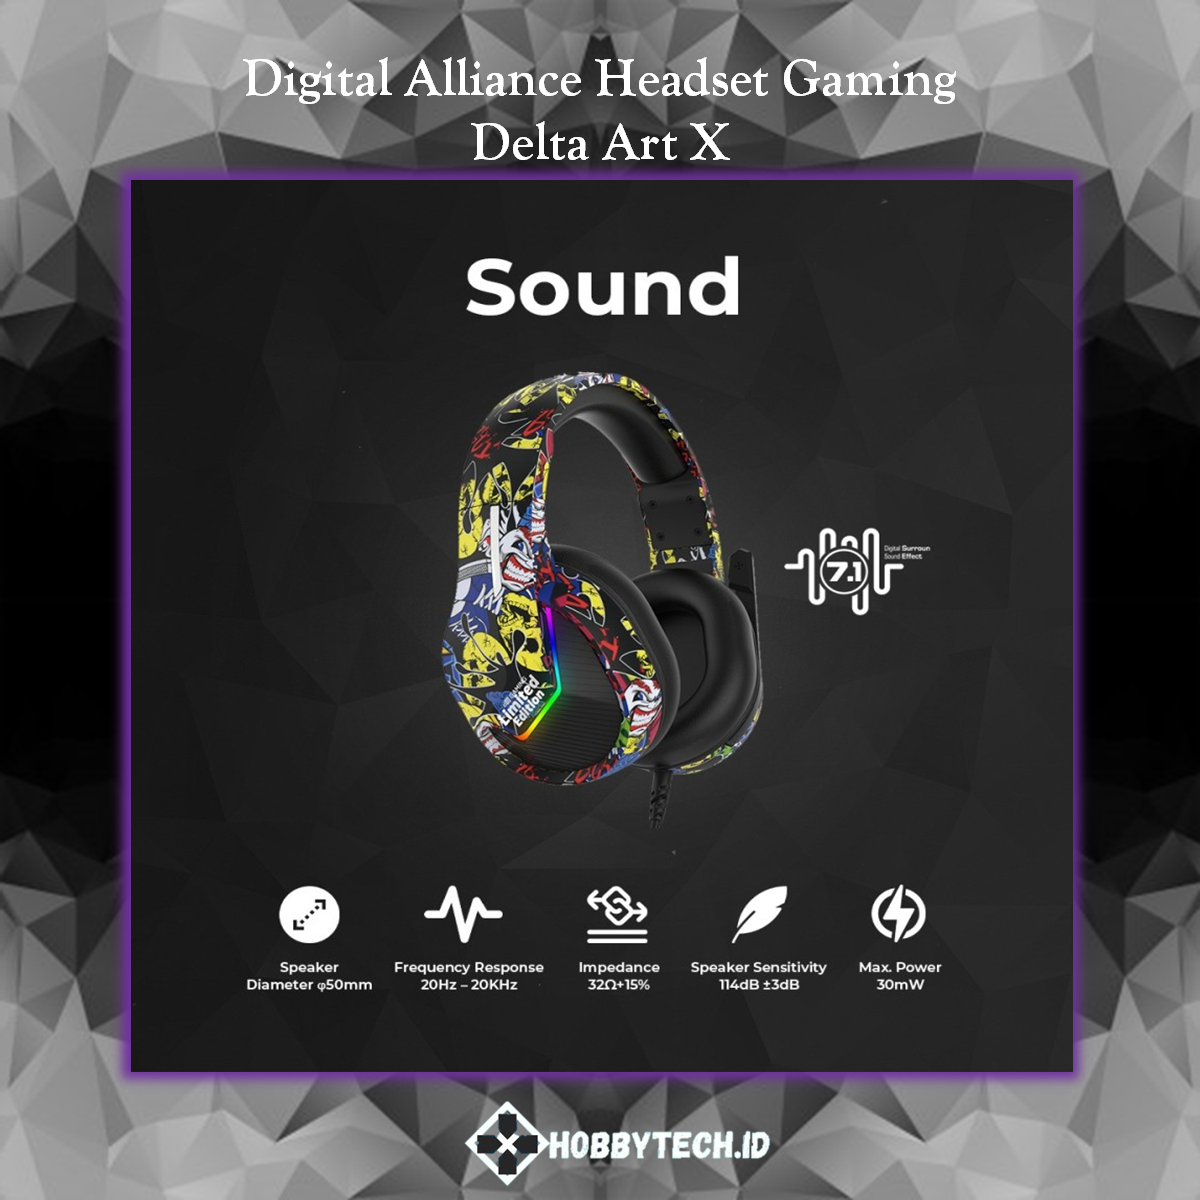 Digital Alliance Headset Gaming DELTA ART X Virtual Surround Sound 7.1